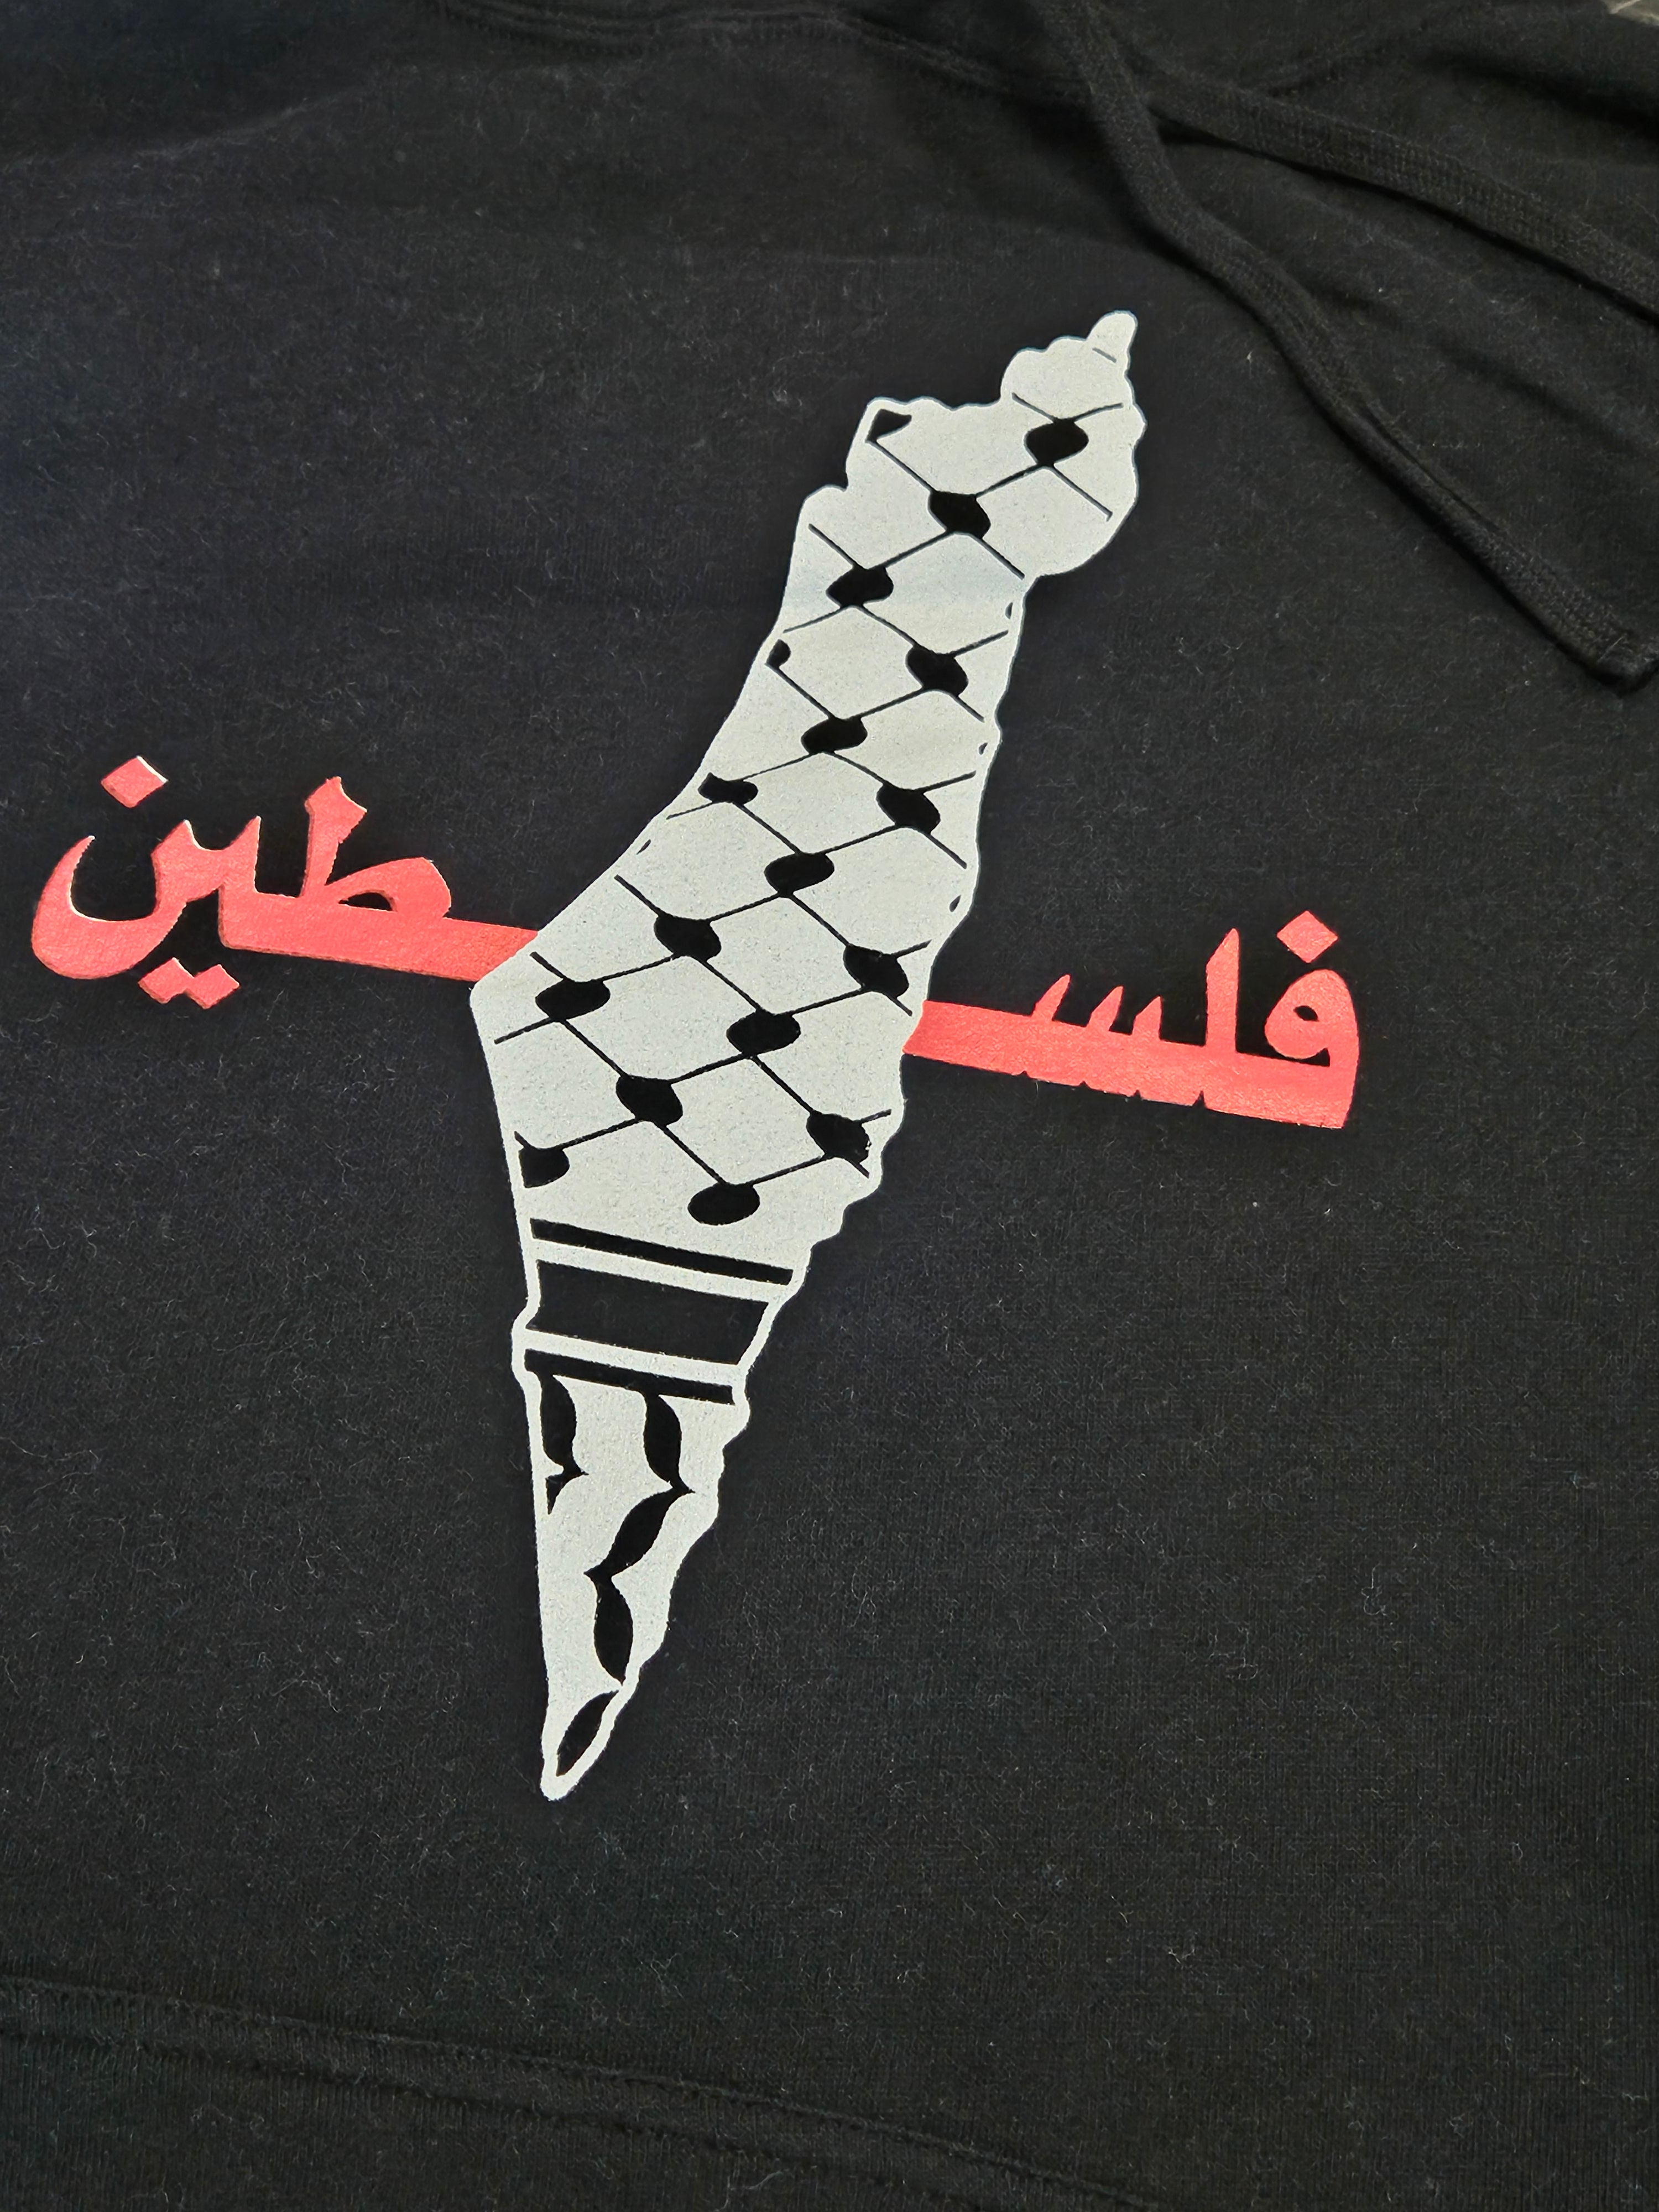 Palestine Keffiyeh Design Hoodie or Long Sleeve - Kids & Adult Size - Habibi Heritage